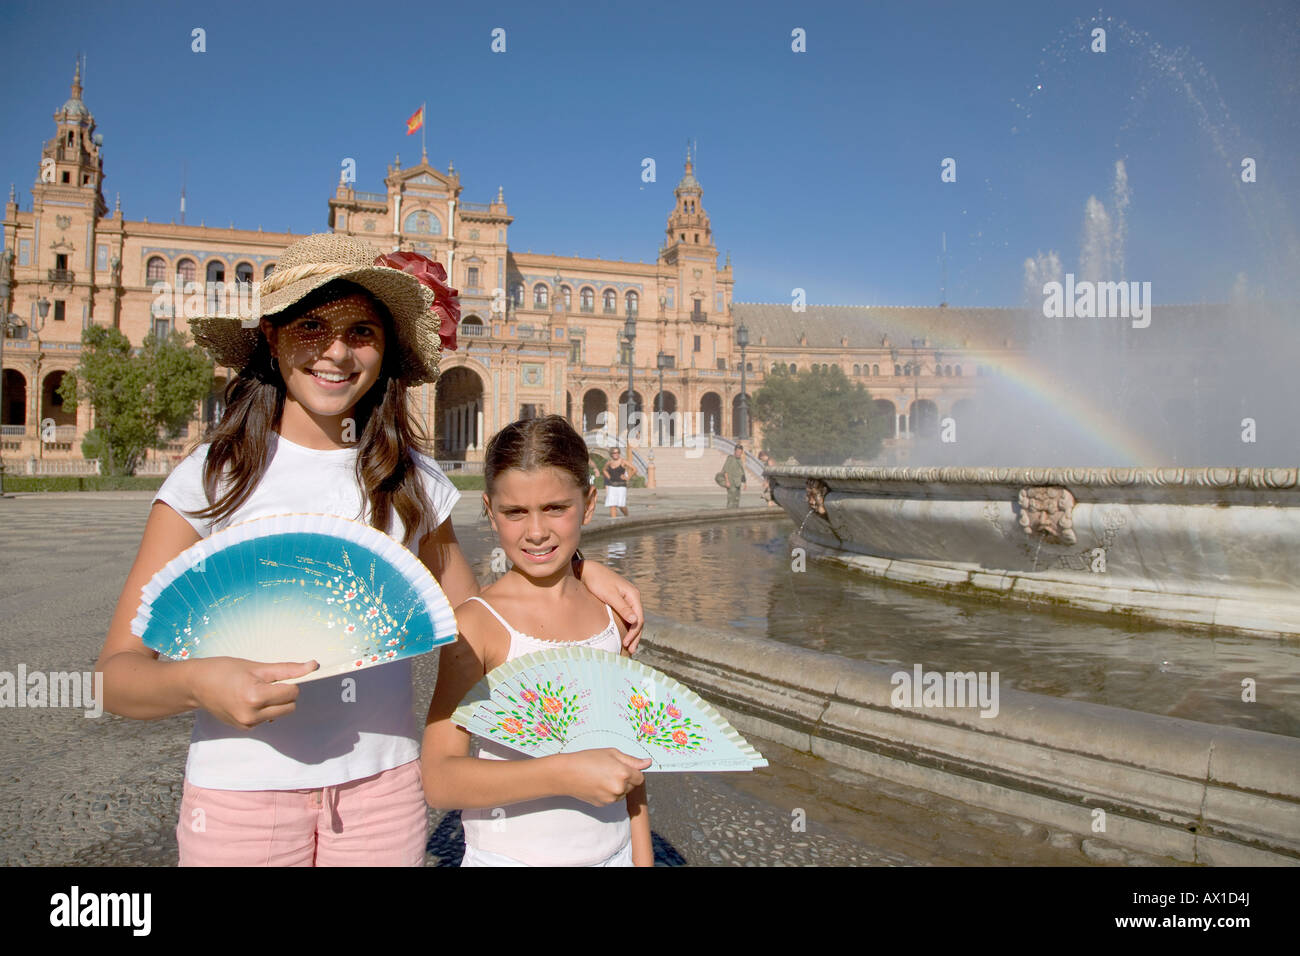 Les touristes italiens avec fans, Plaza de España, Séville, Andalousie, Espagne Banque D'Images